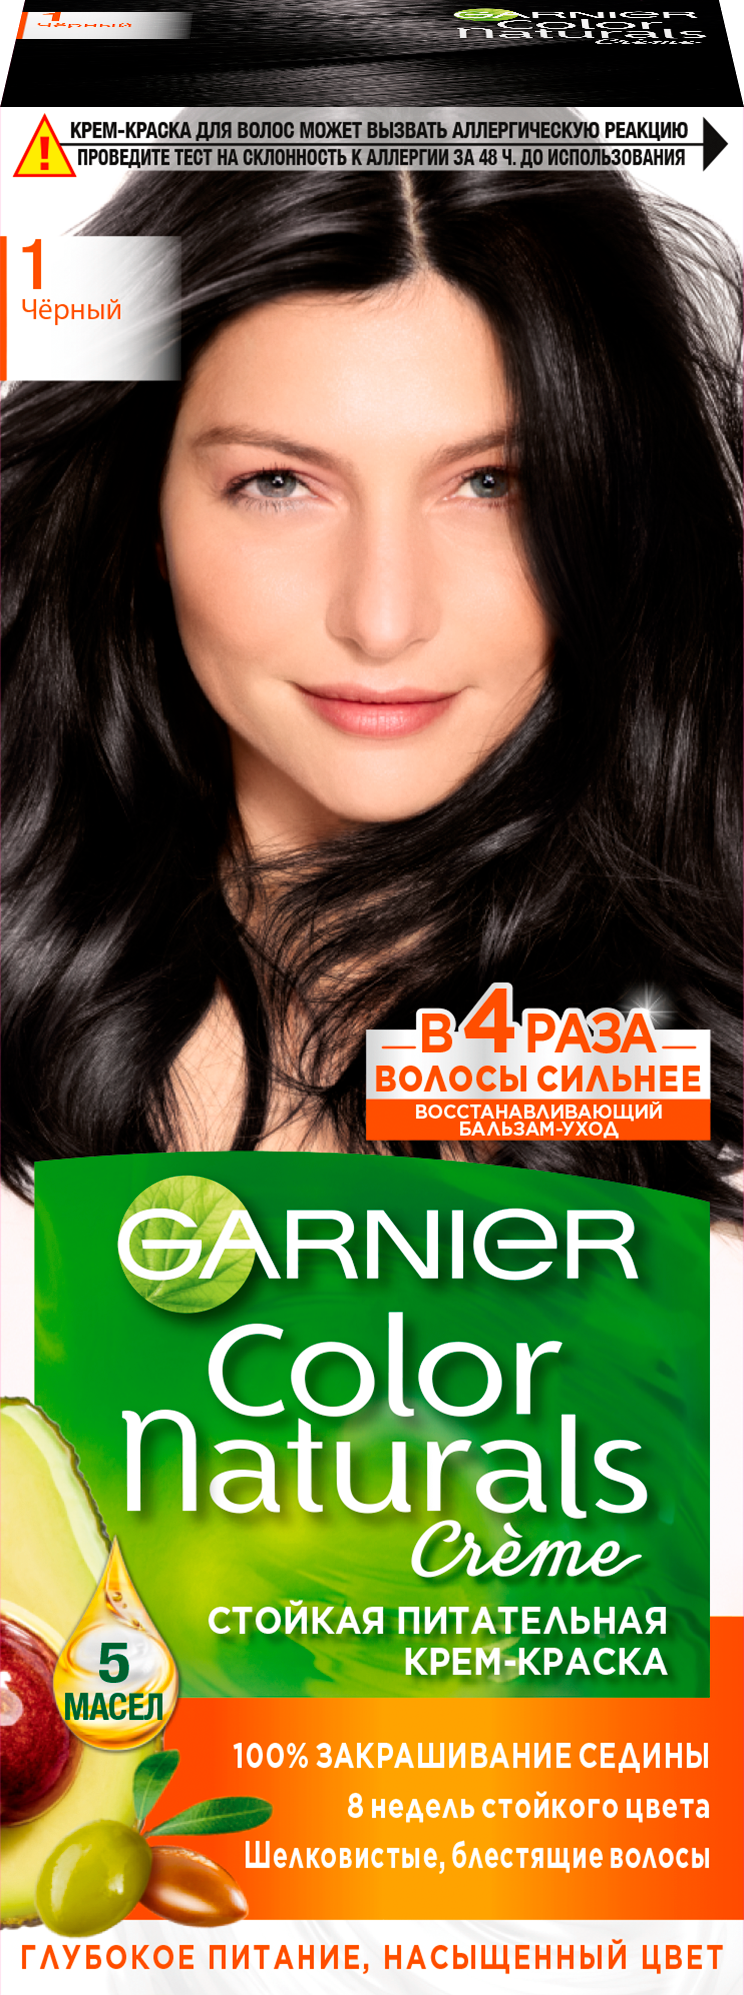 GARNIER Color Naturals стойкая питательная крем-краска для волос, 1 черный